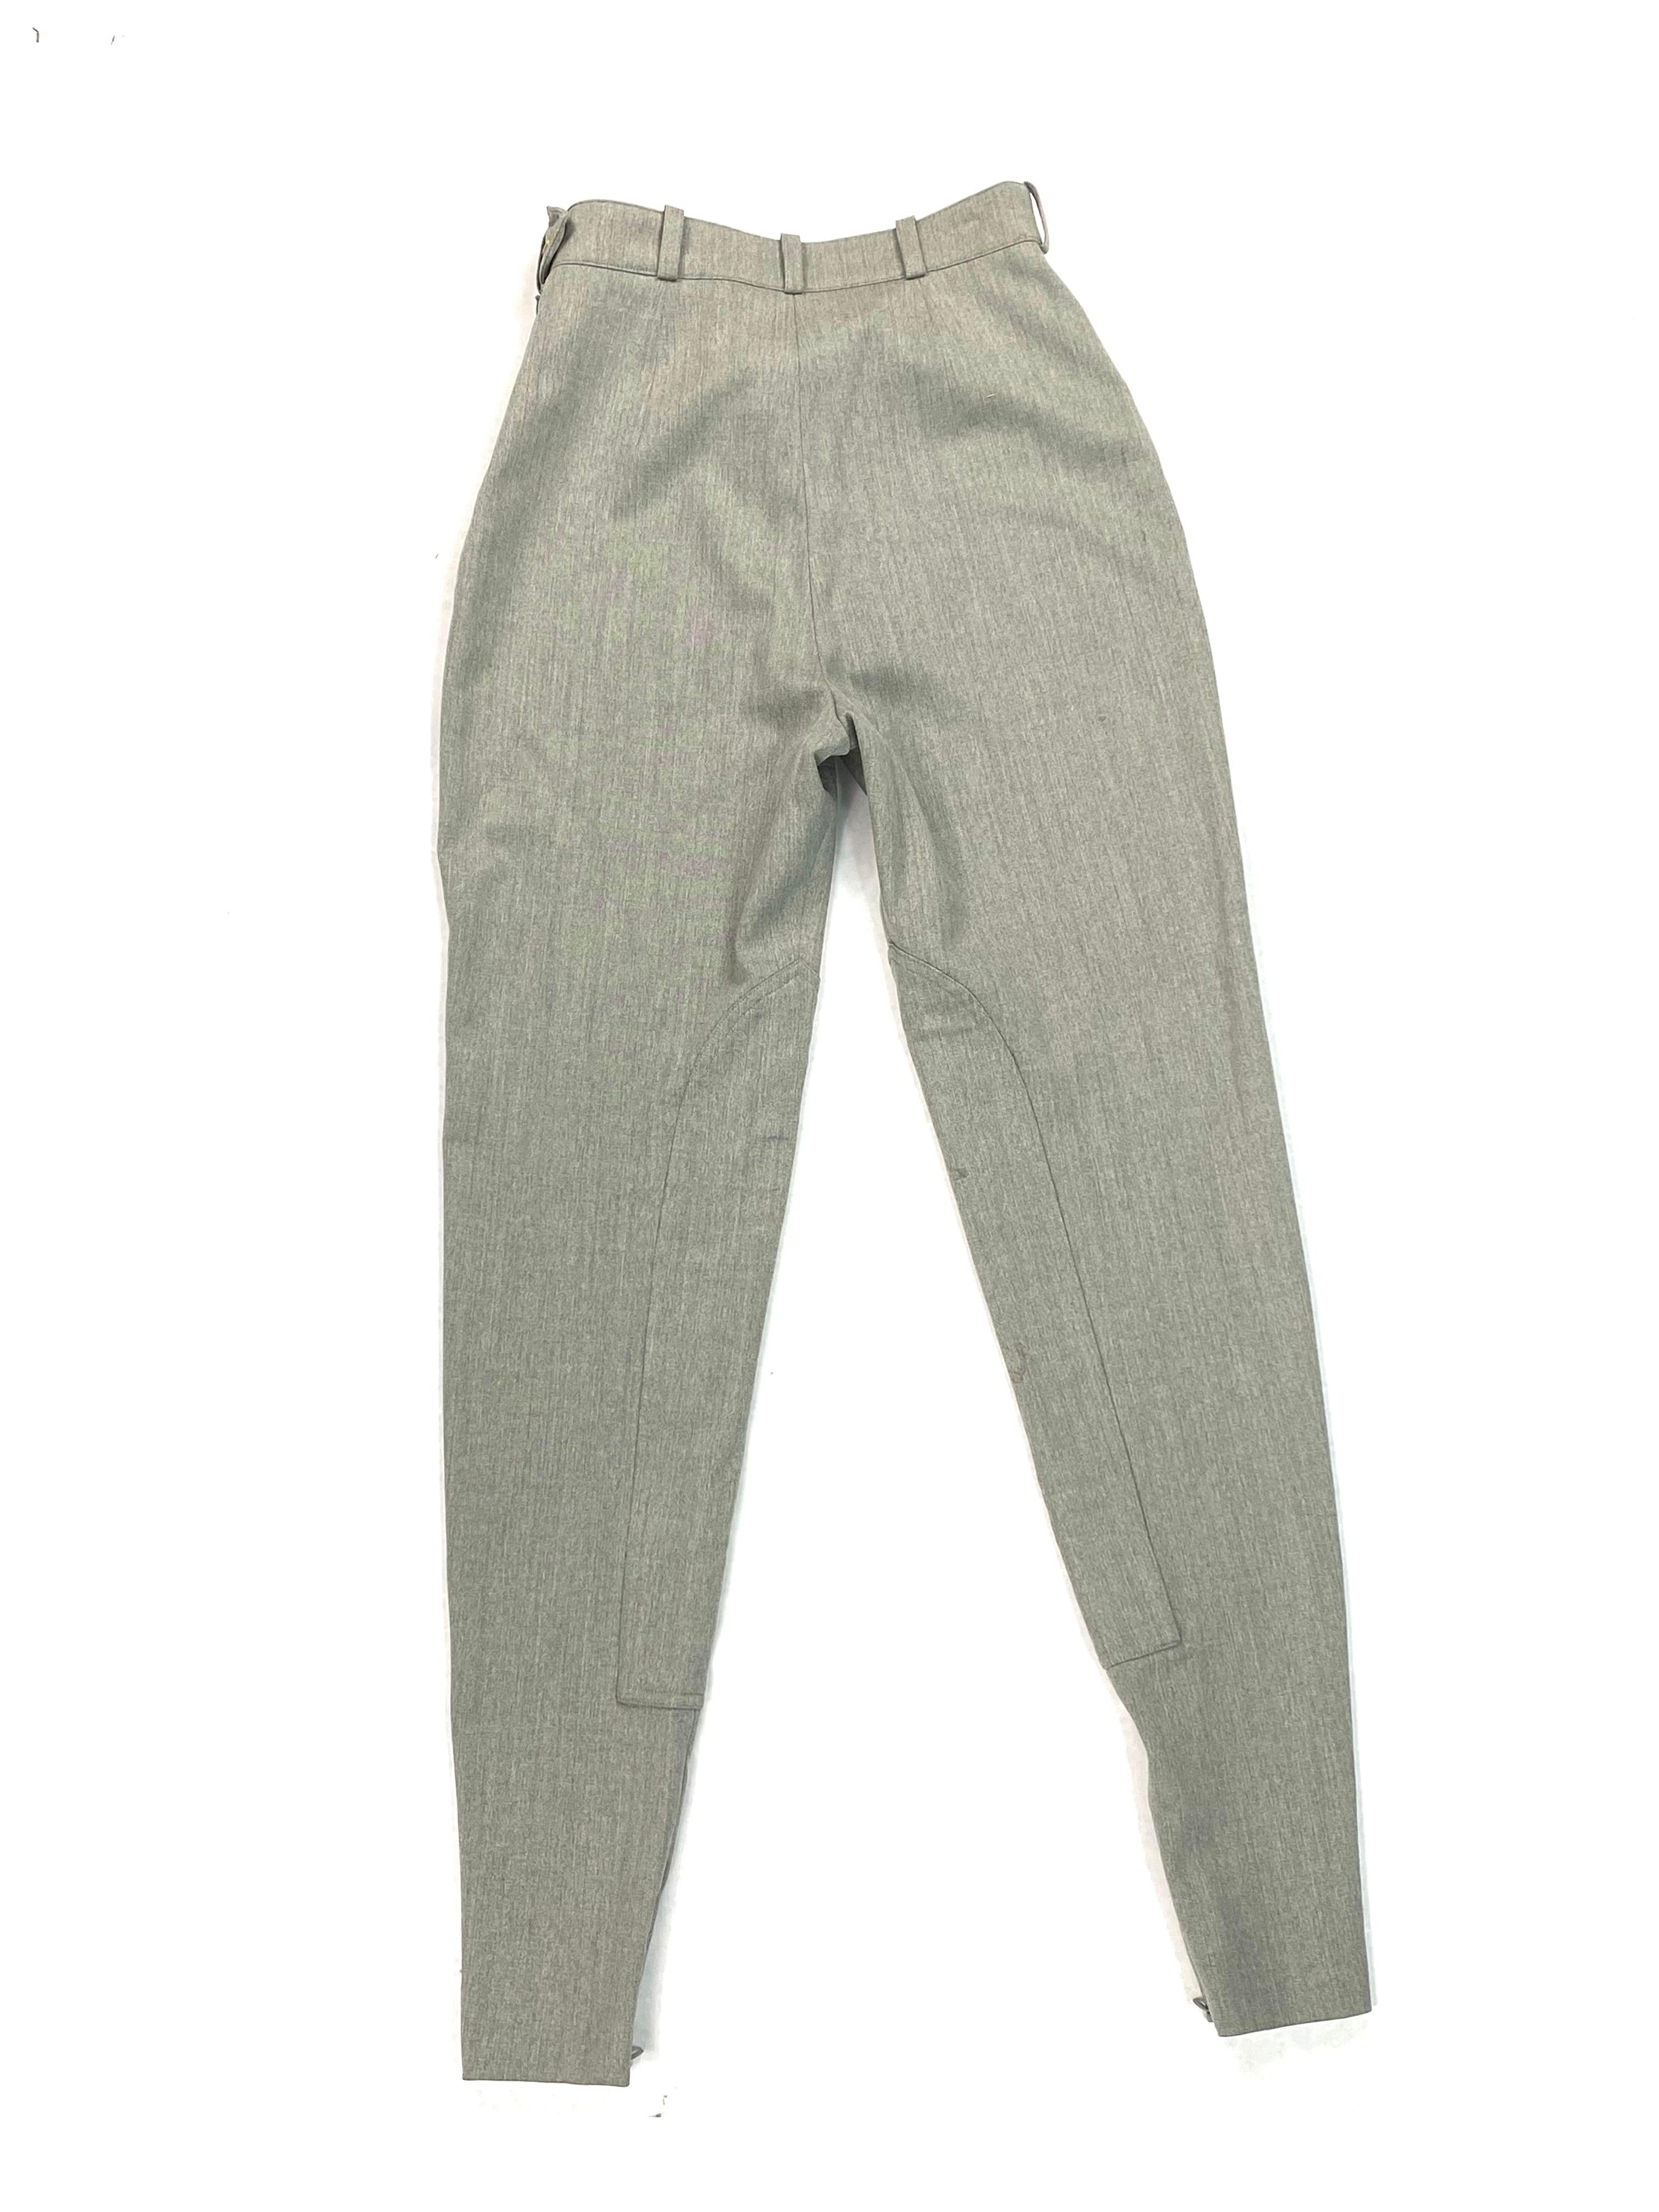 Vintage Hermes Grey Wool Riding Skinny Leggings Pants Size 38 For Sale 2